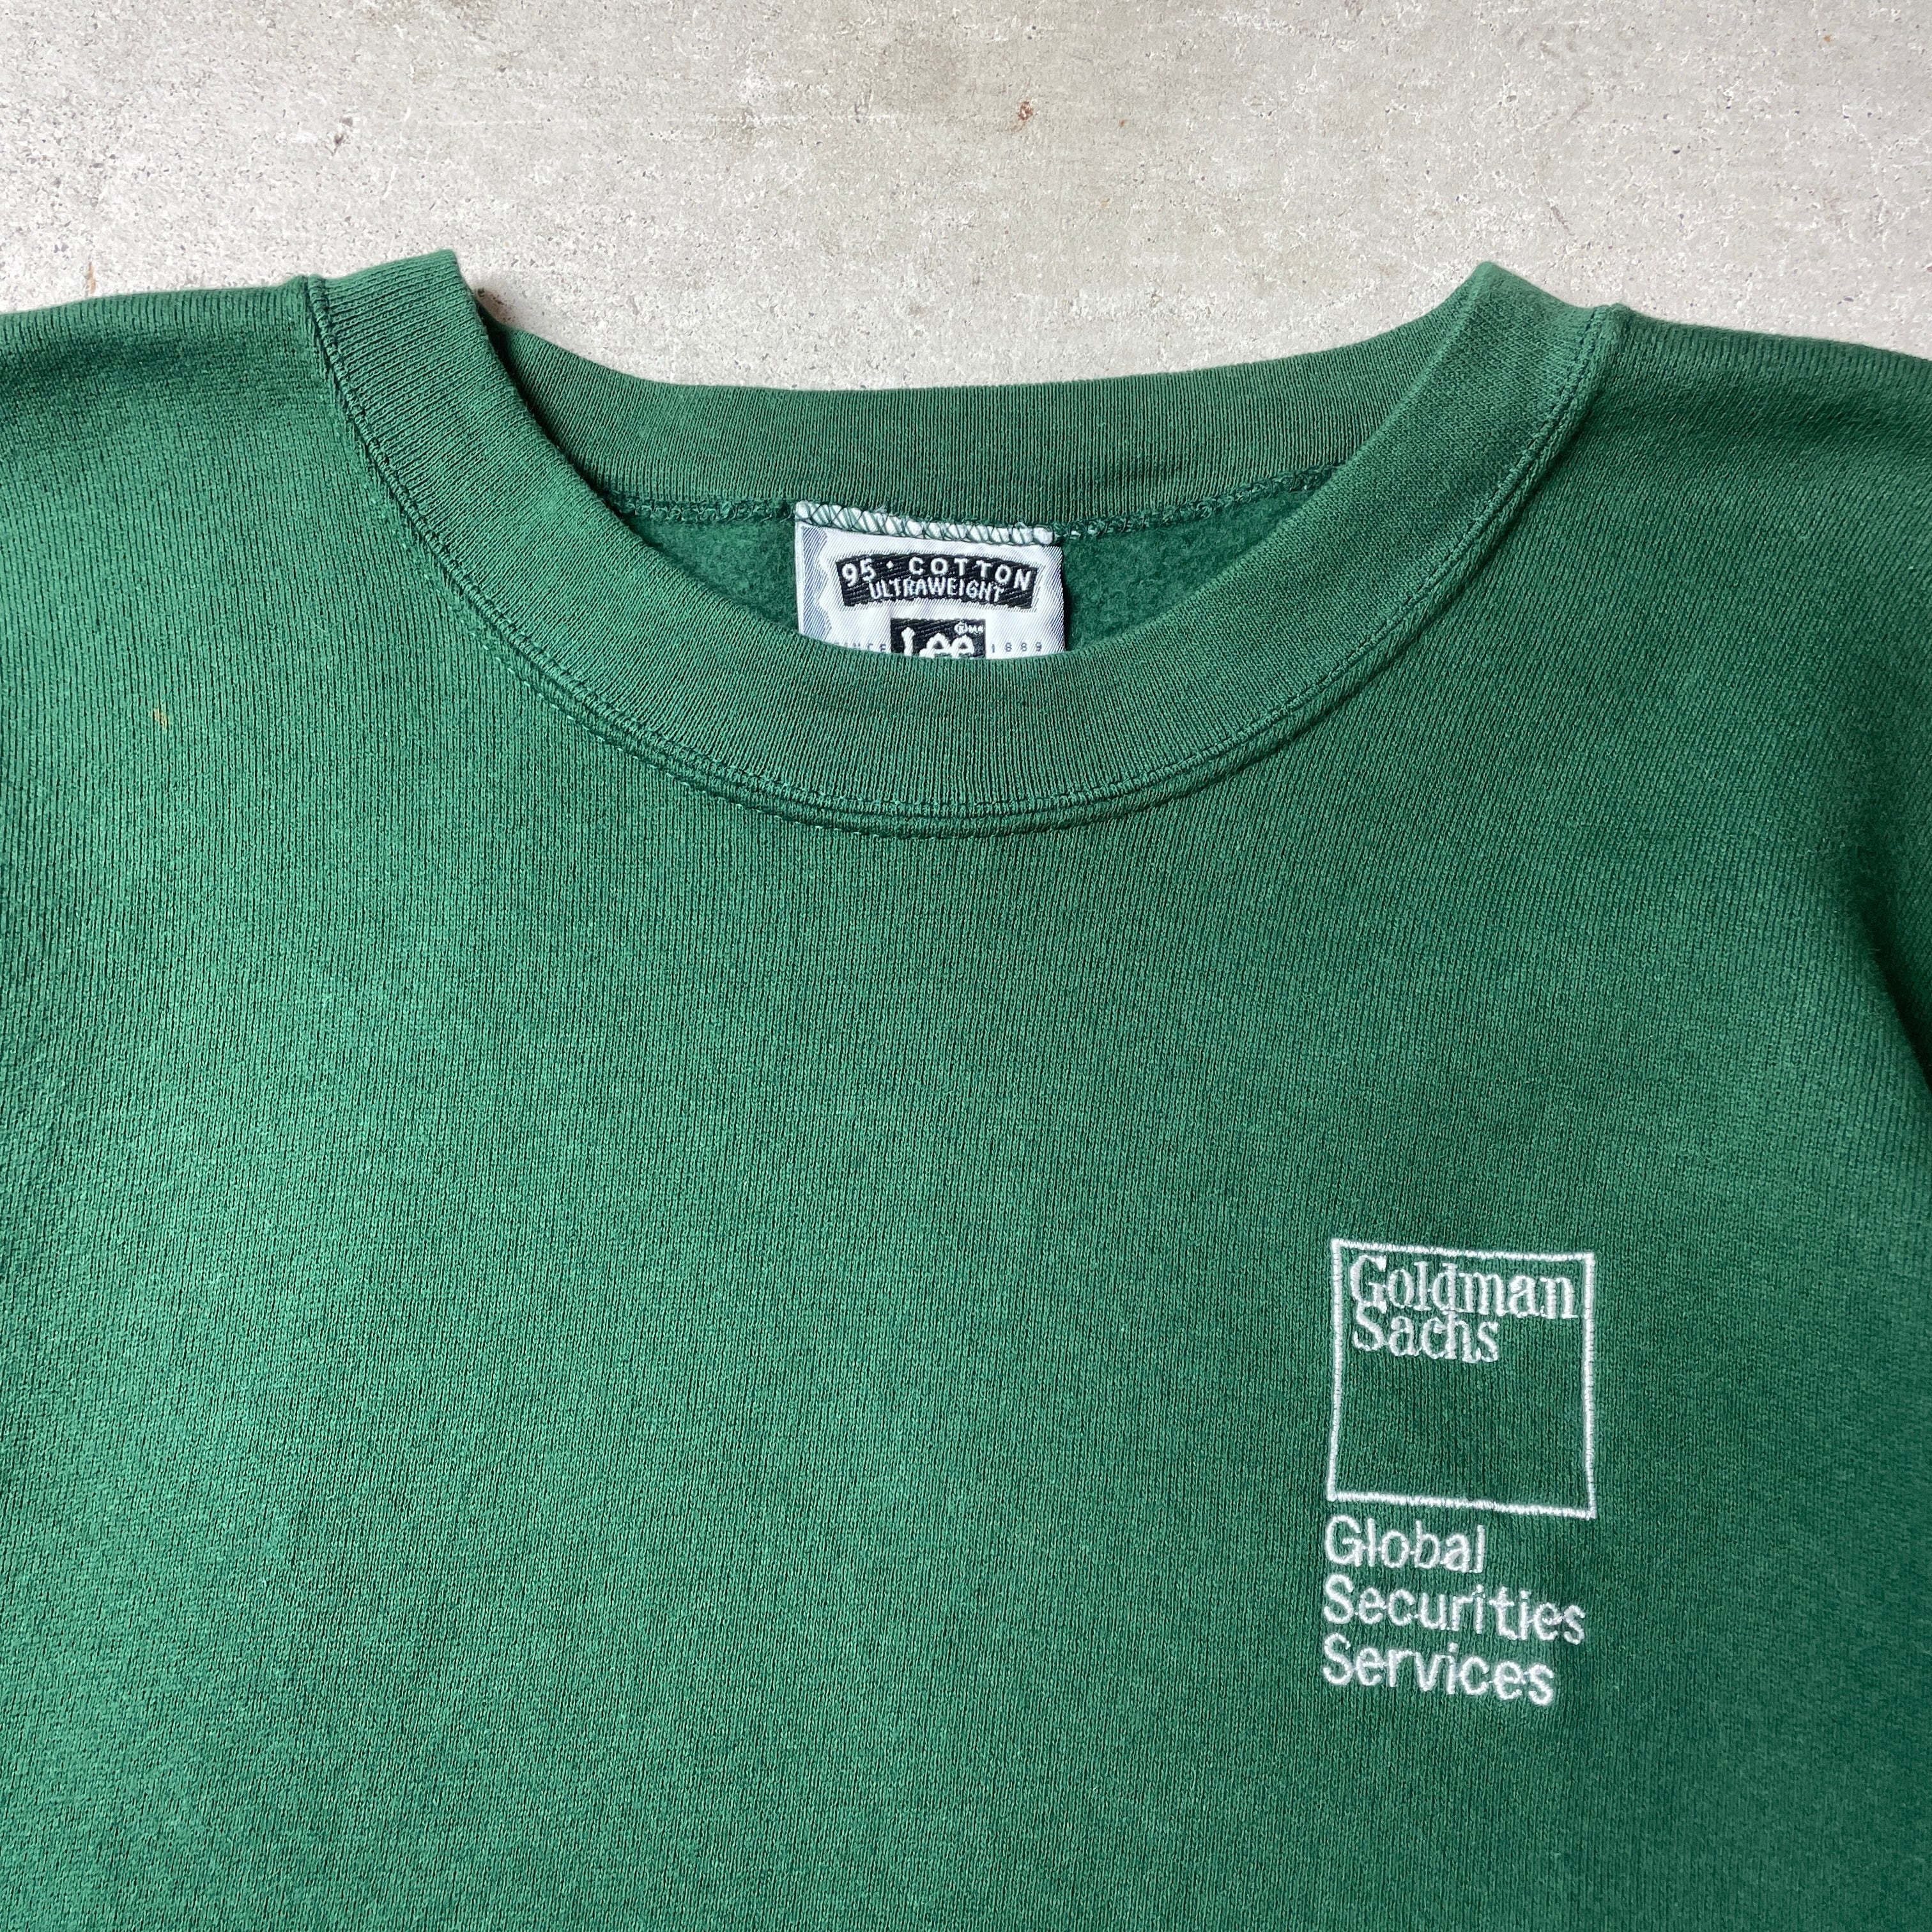 90年代 USA製 Goldman Sachs ゴールドマン・サックス 企業ロゴ刺繍 スウェットシャツ メンズXL 古着 90s ビンテージ  ヴィンテージ トレーナー グリーン 緑【スウェット】 | cave 古着屋【公式】古着通販サイト